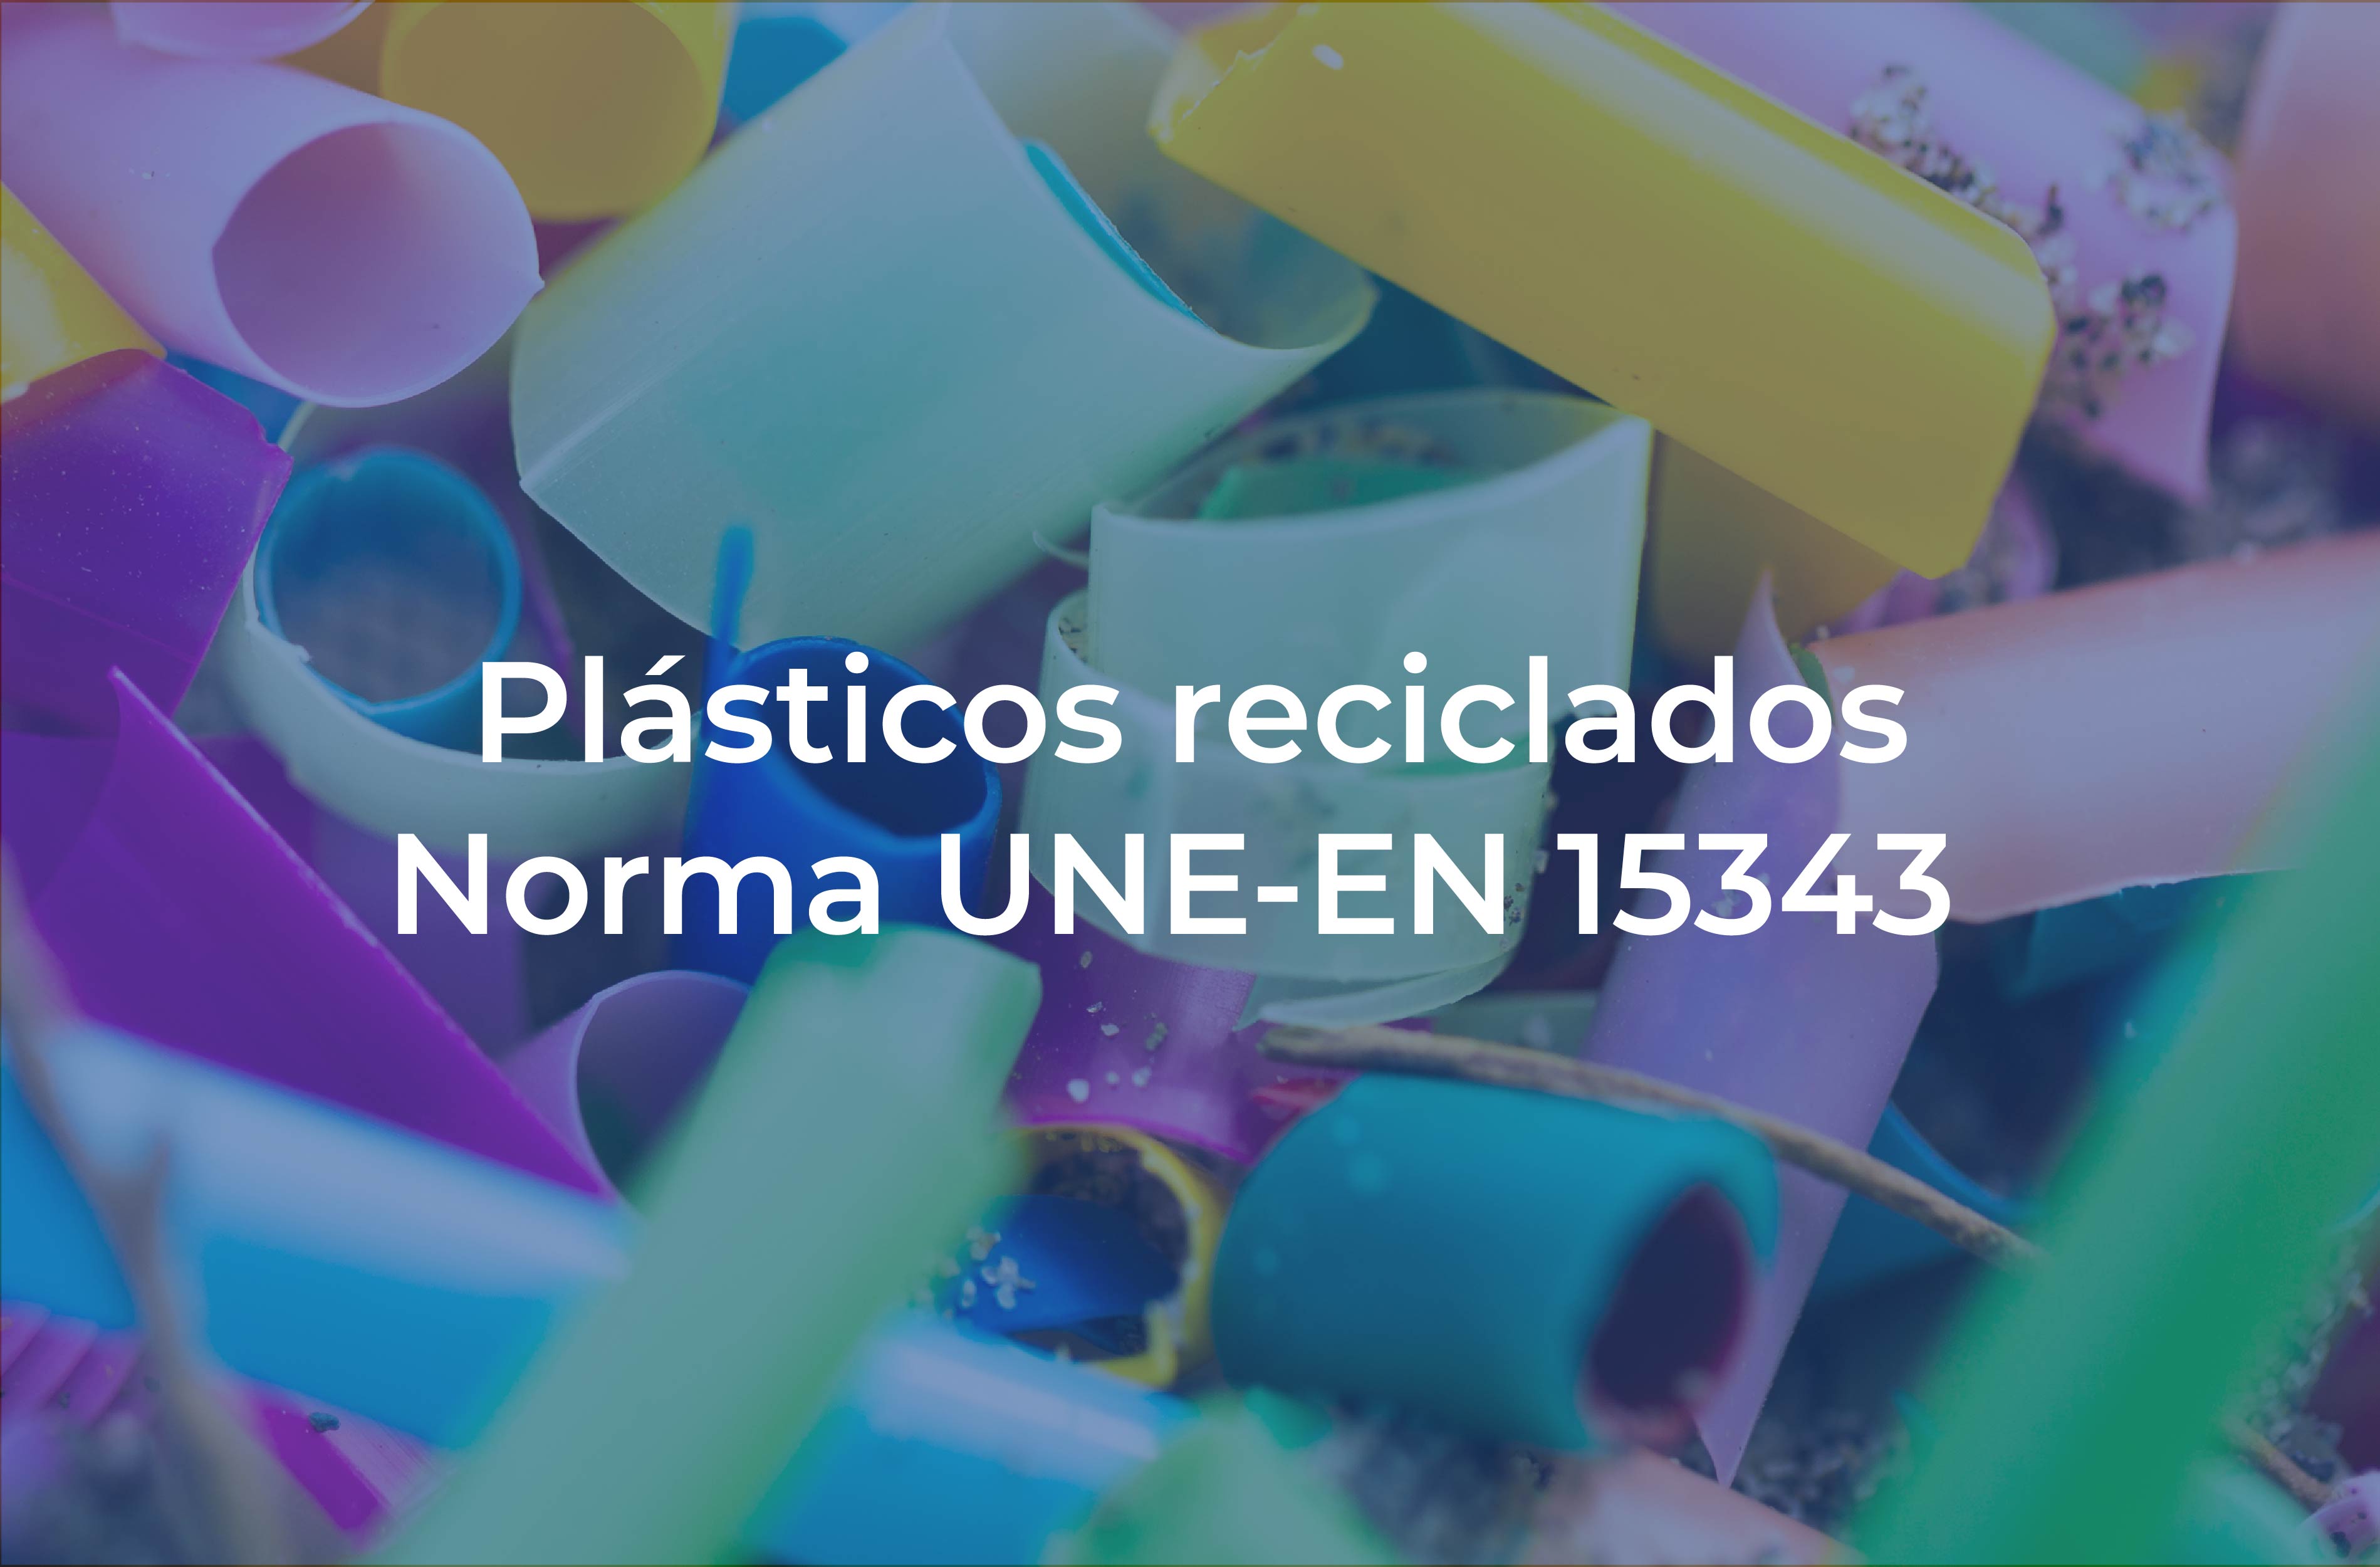 CTME lidera en sostenibilidad con su iniciativa pionera en trazabilidad de plásticos reciclados, alineándose con la nueva ley de residuos, destacándose en el sector y enfatizando su compromiso ambiental. trazabilidad de los plásticos reciclados según la Norma UNE-EN-15343